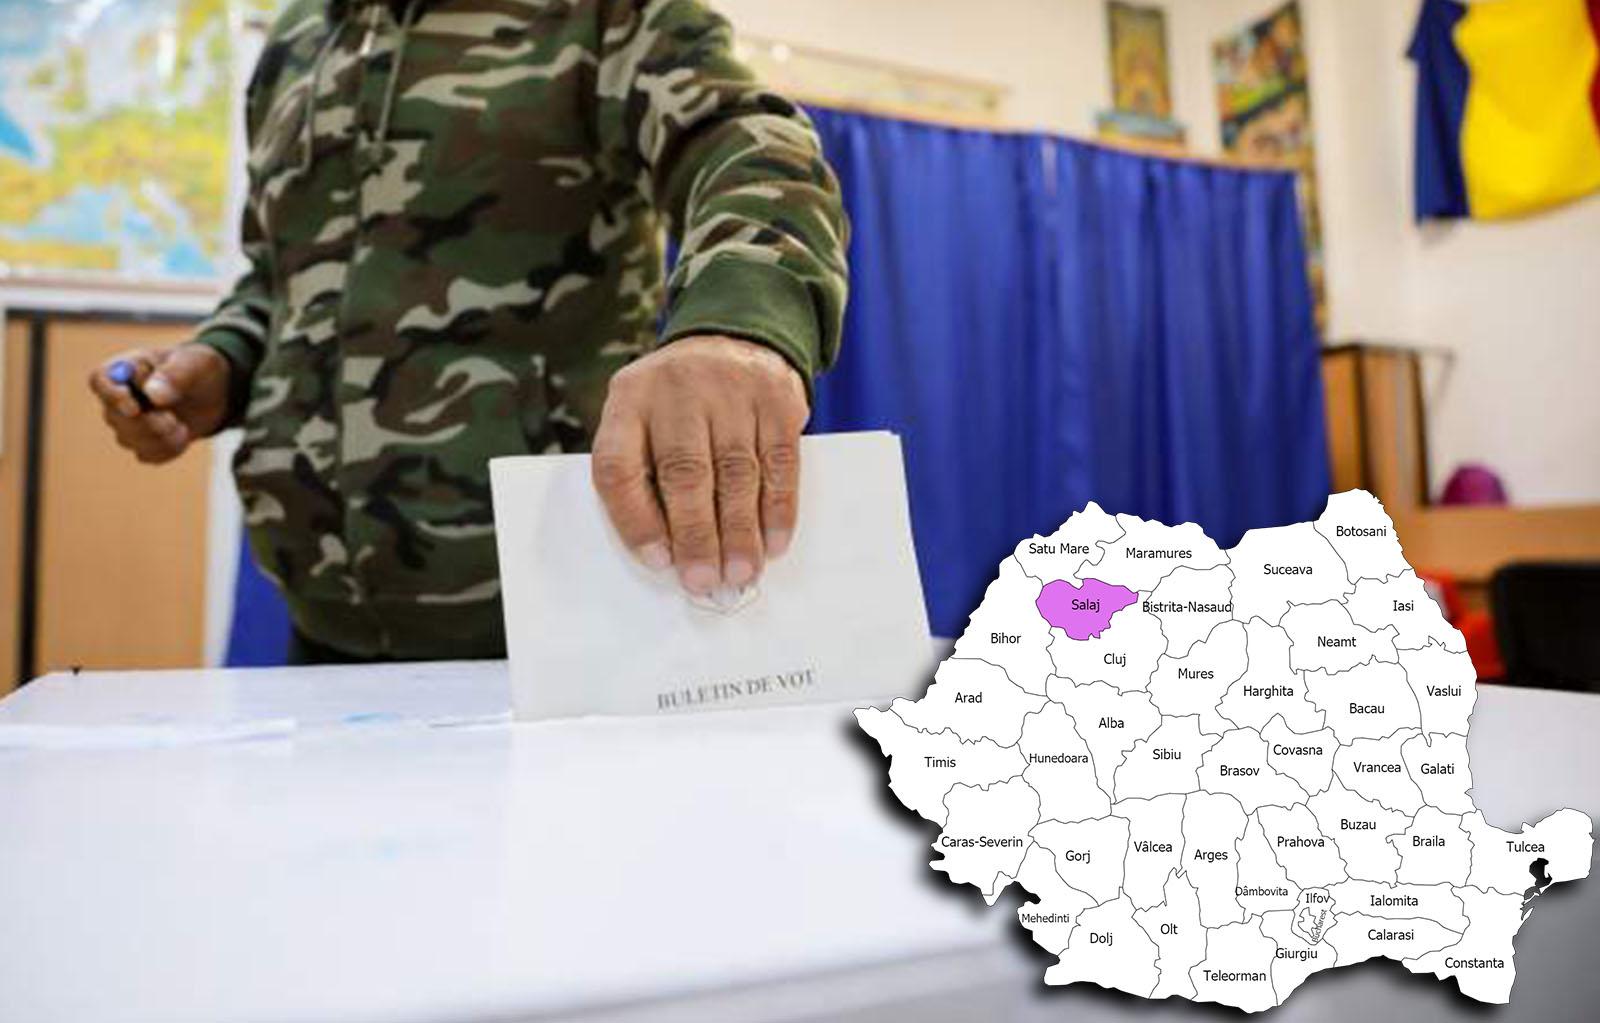 Rezultate alegeri parlamentare 2020 în județul Sălaj. Cine câștigă alegerile pentru Senat și Camera Deputaților